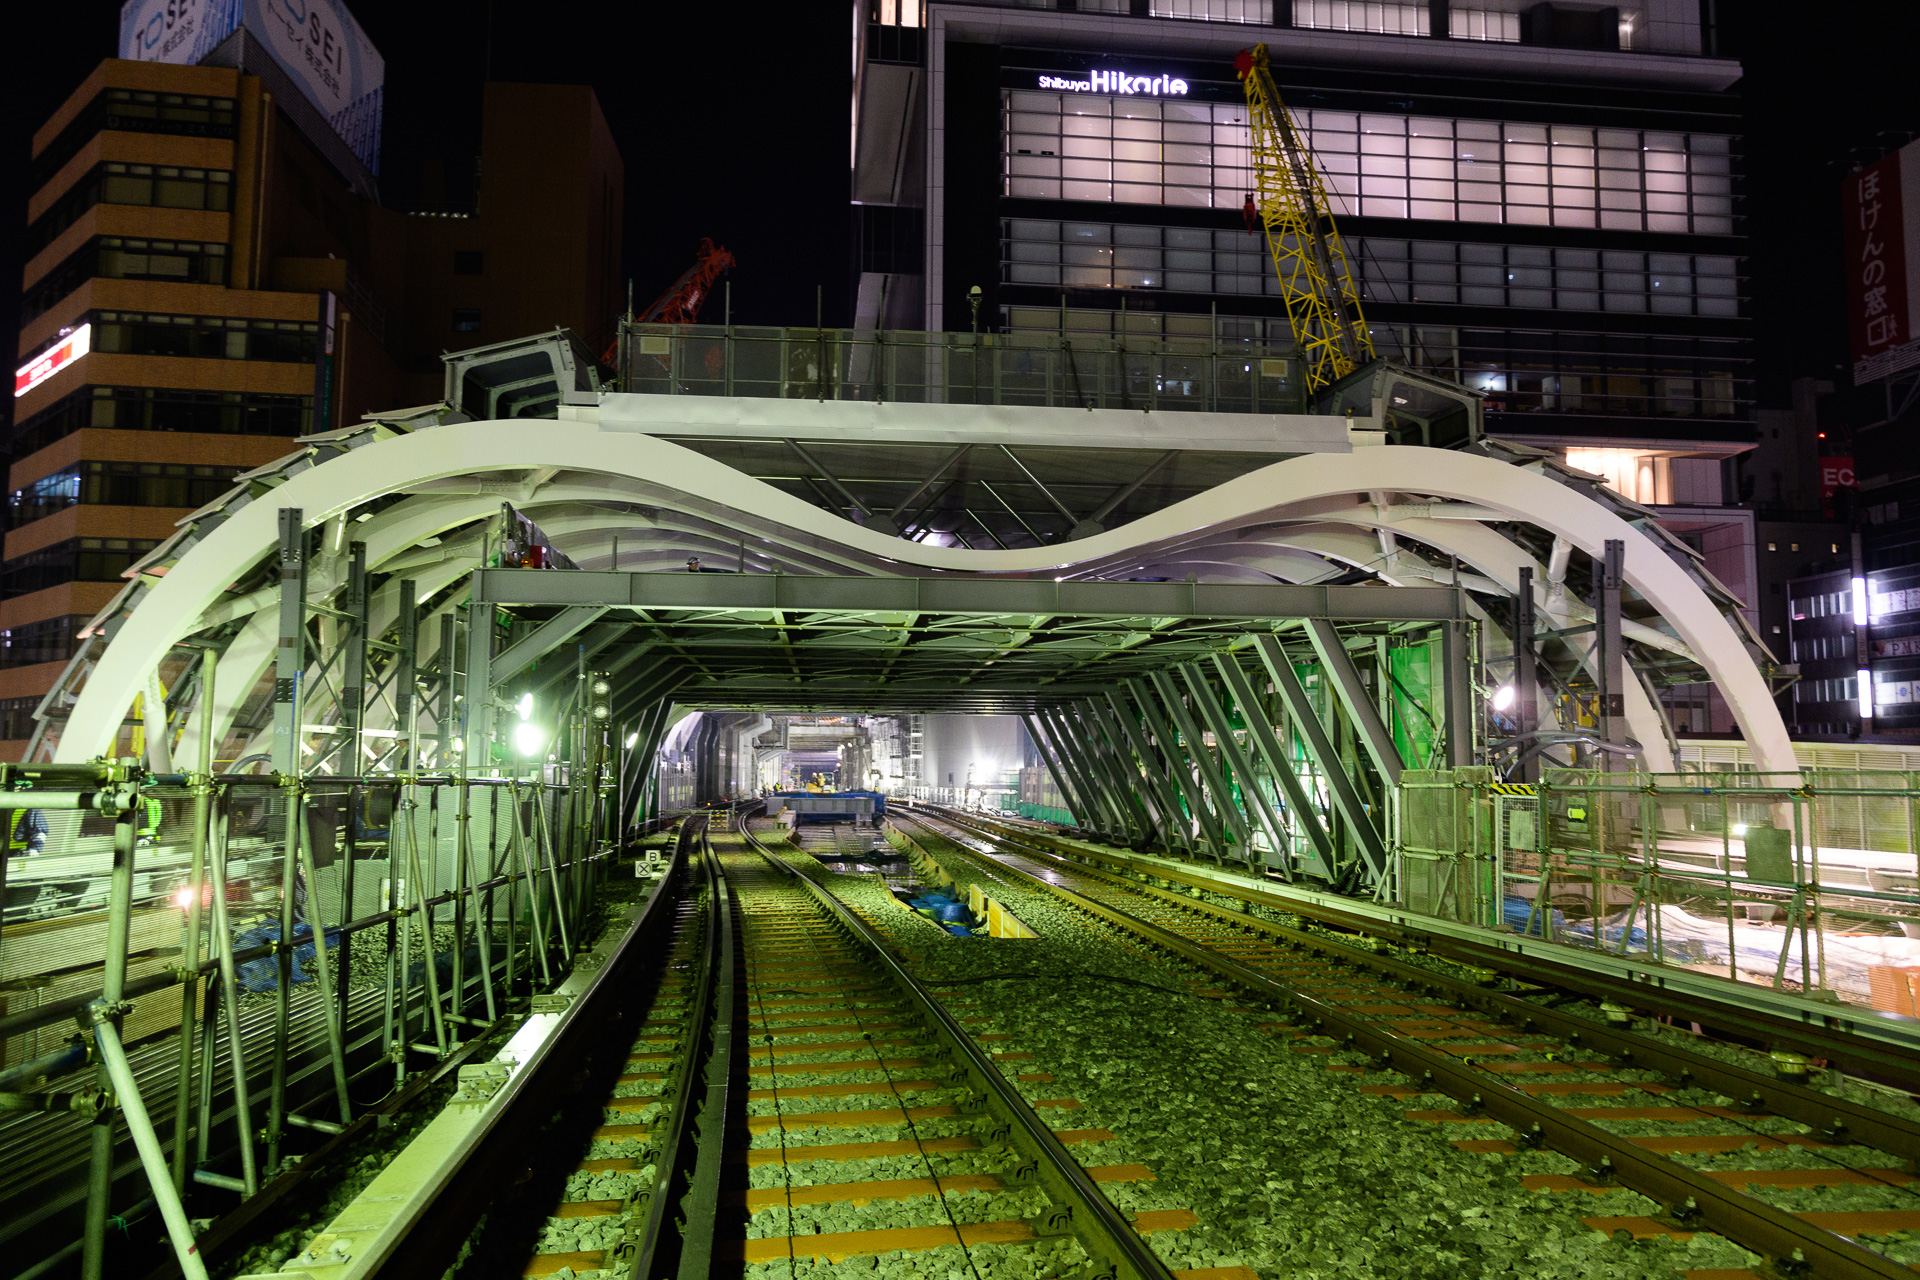 東京メトロ 銀座線渋谷駅の屋根スライド工事を実施 19年度後半に新ホームを供用開始予定 トラベル Watch